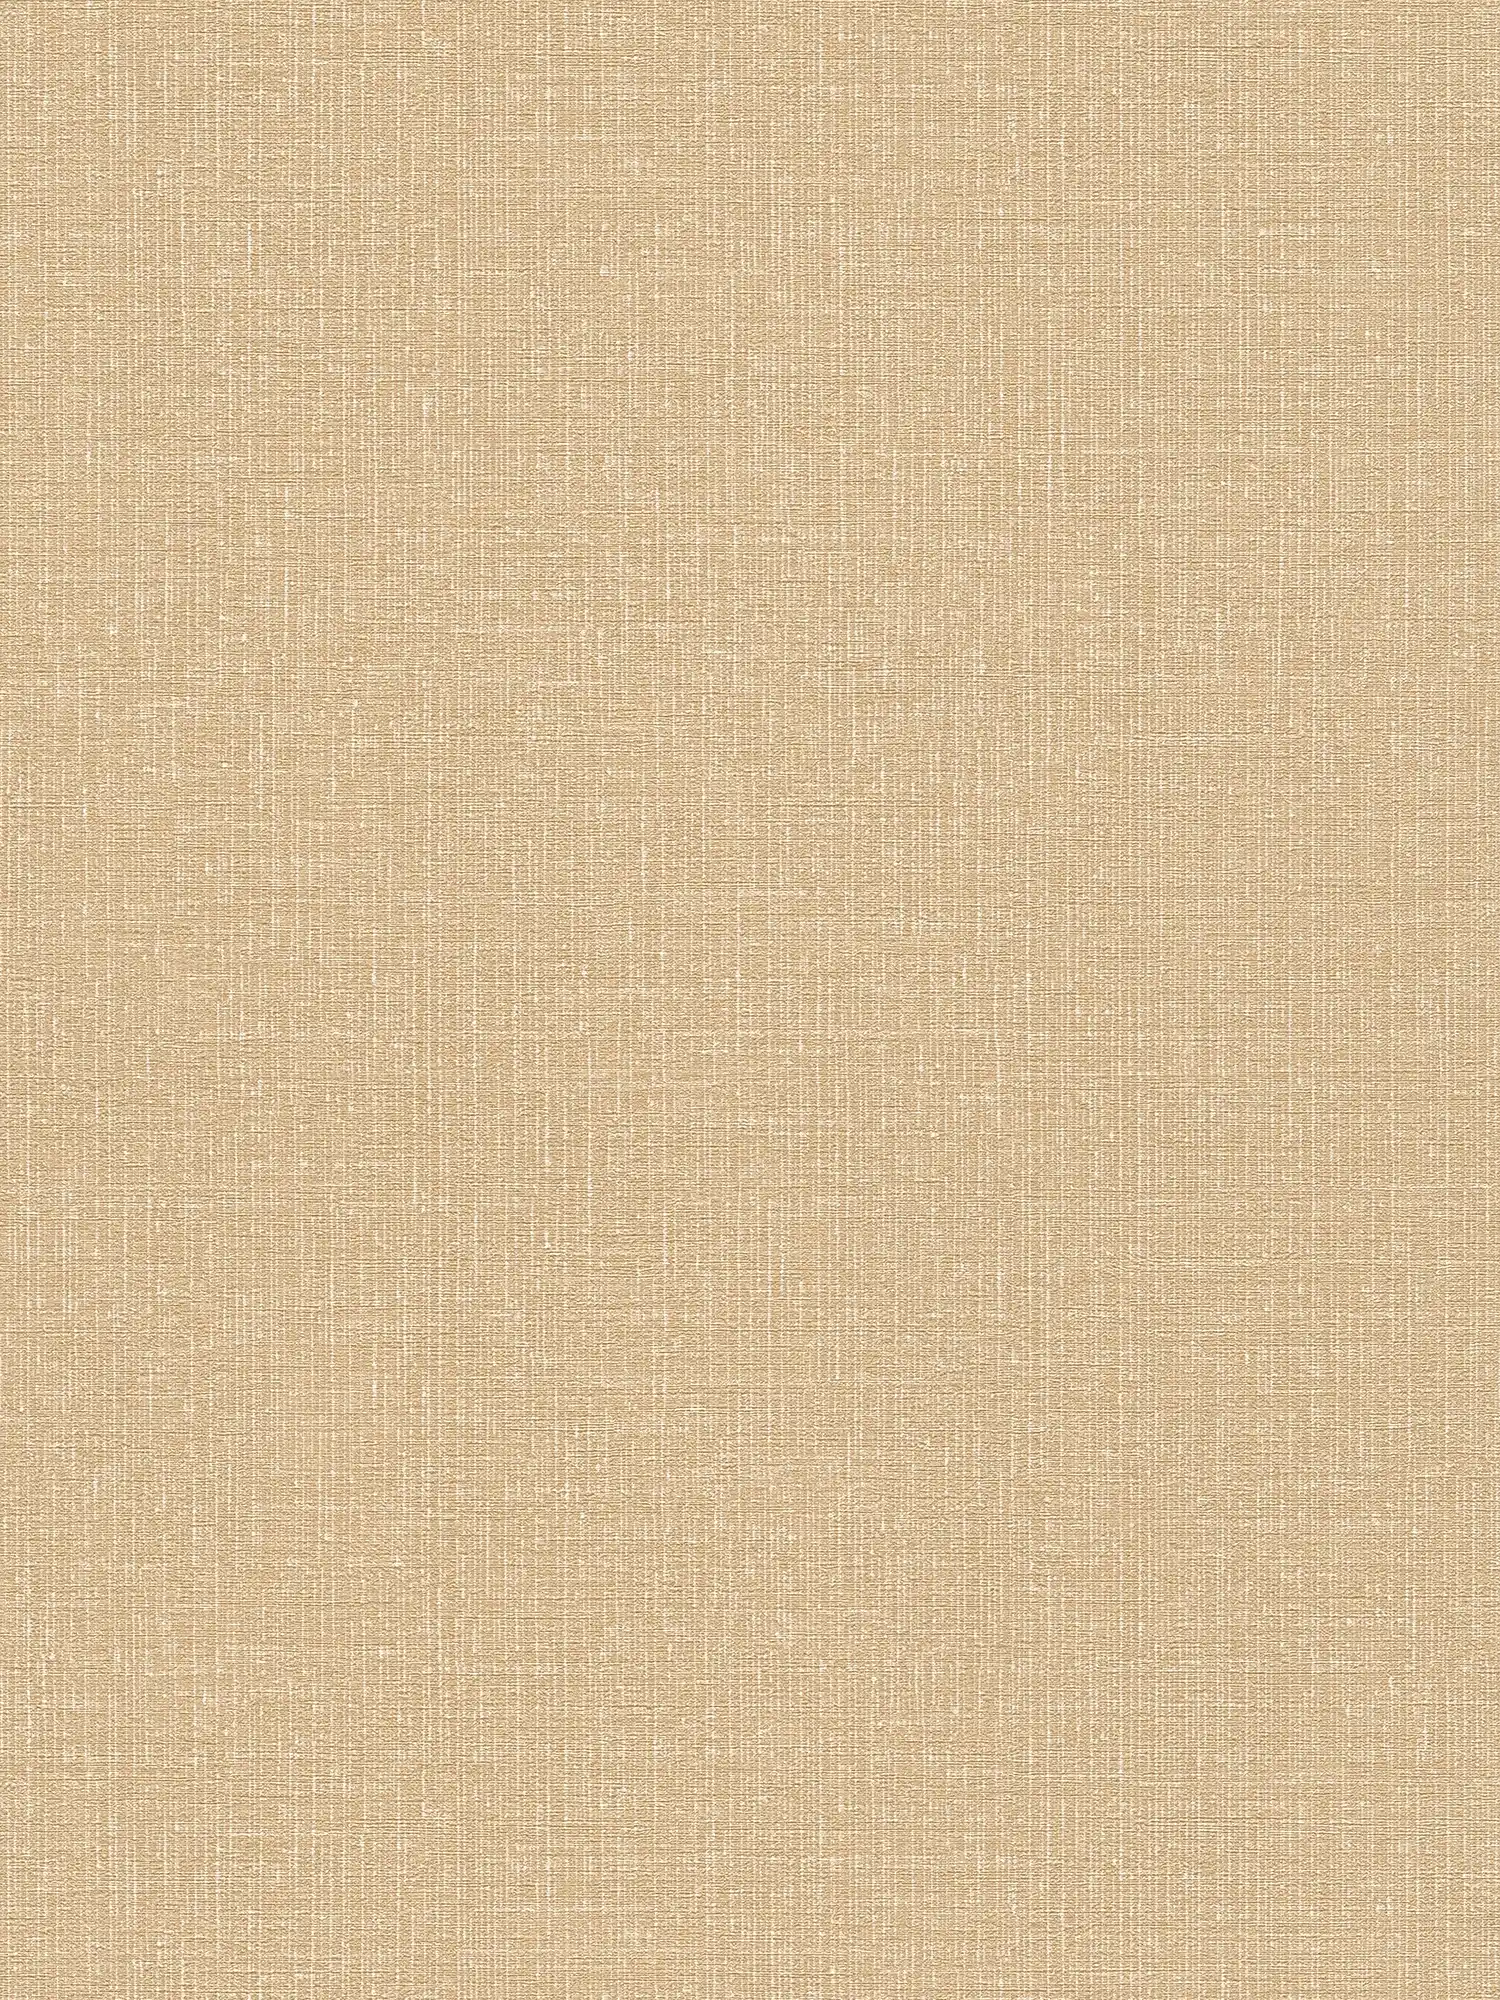 Papel pintado de lino no tejido beige-oro con efecto texturizado - beige, metálico
